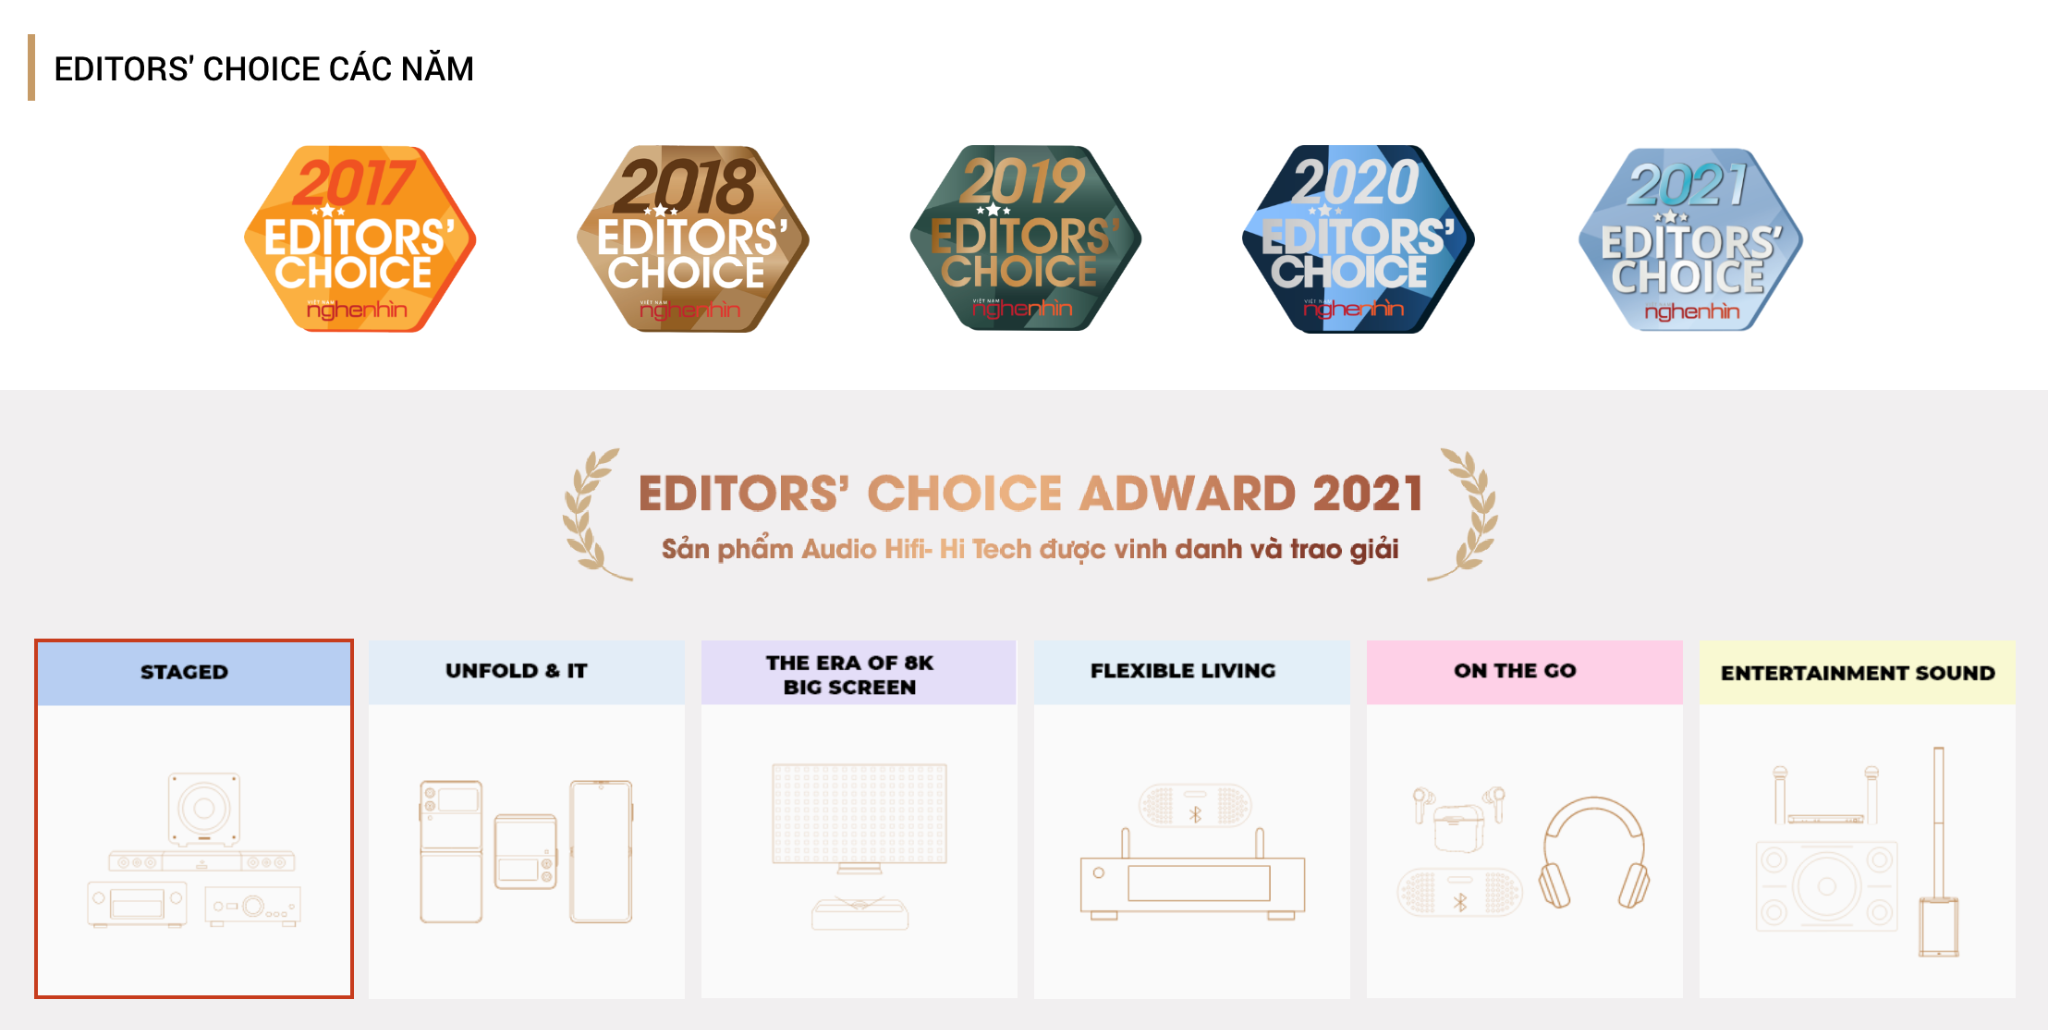 Editors' Choice Awards 2022 công bố chủ đề: Unfold Boundaries - Khai Mở Giới Hạn